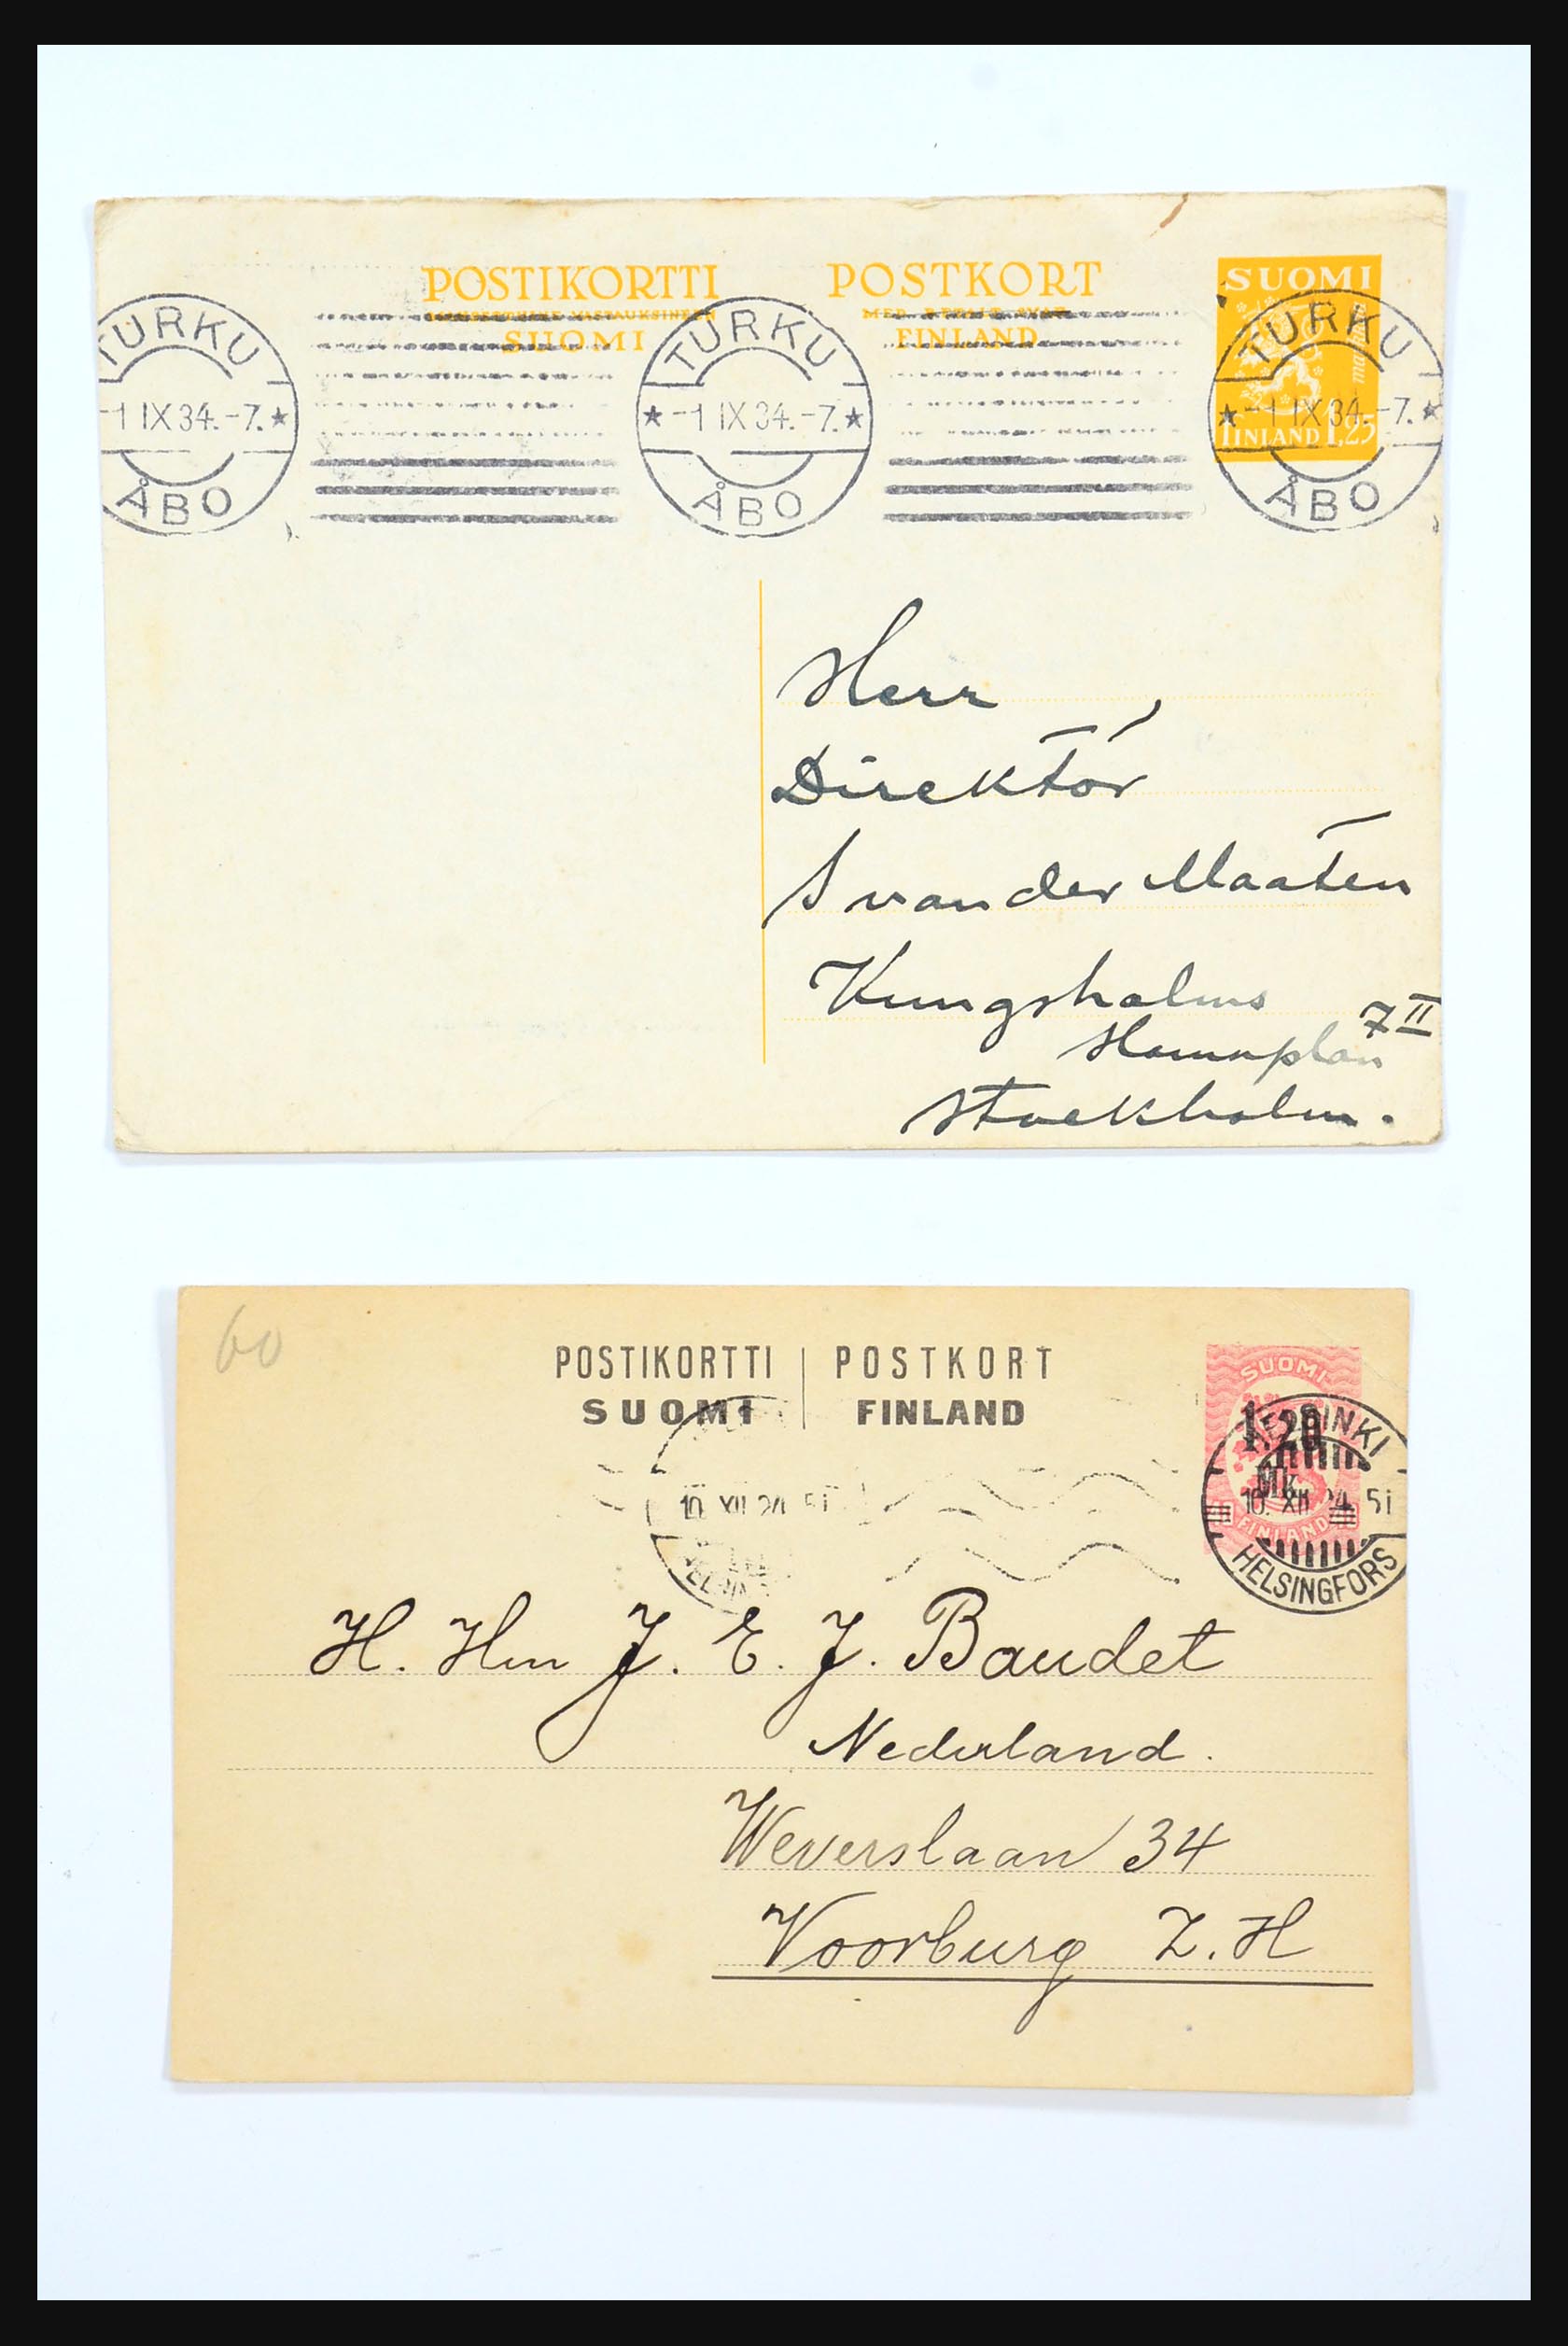 31363 227 - 31363 Finland brieven 1874-1974.